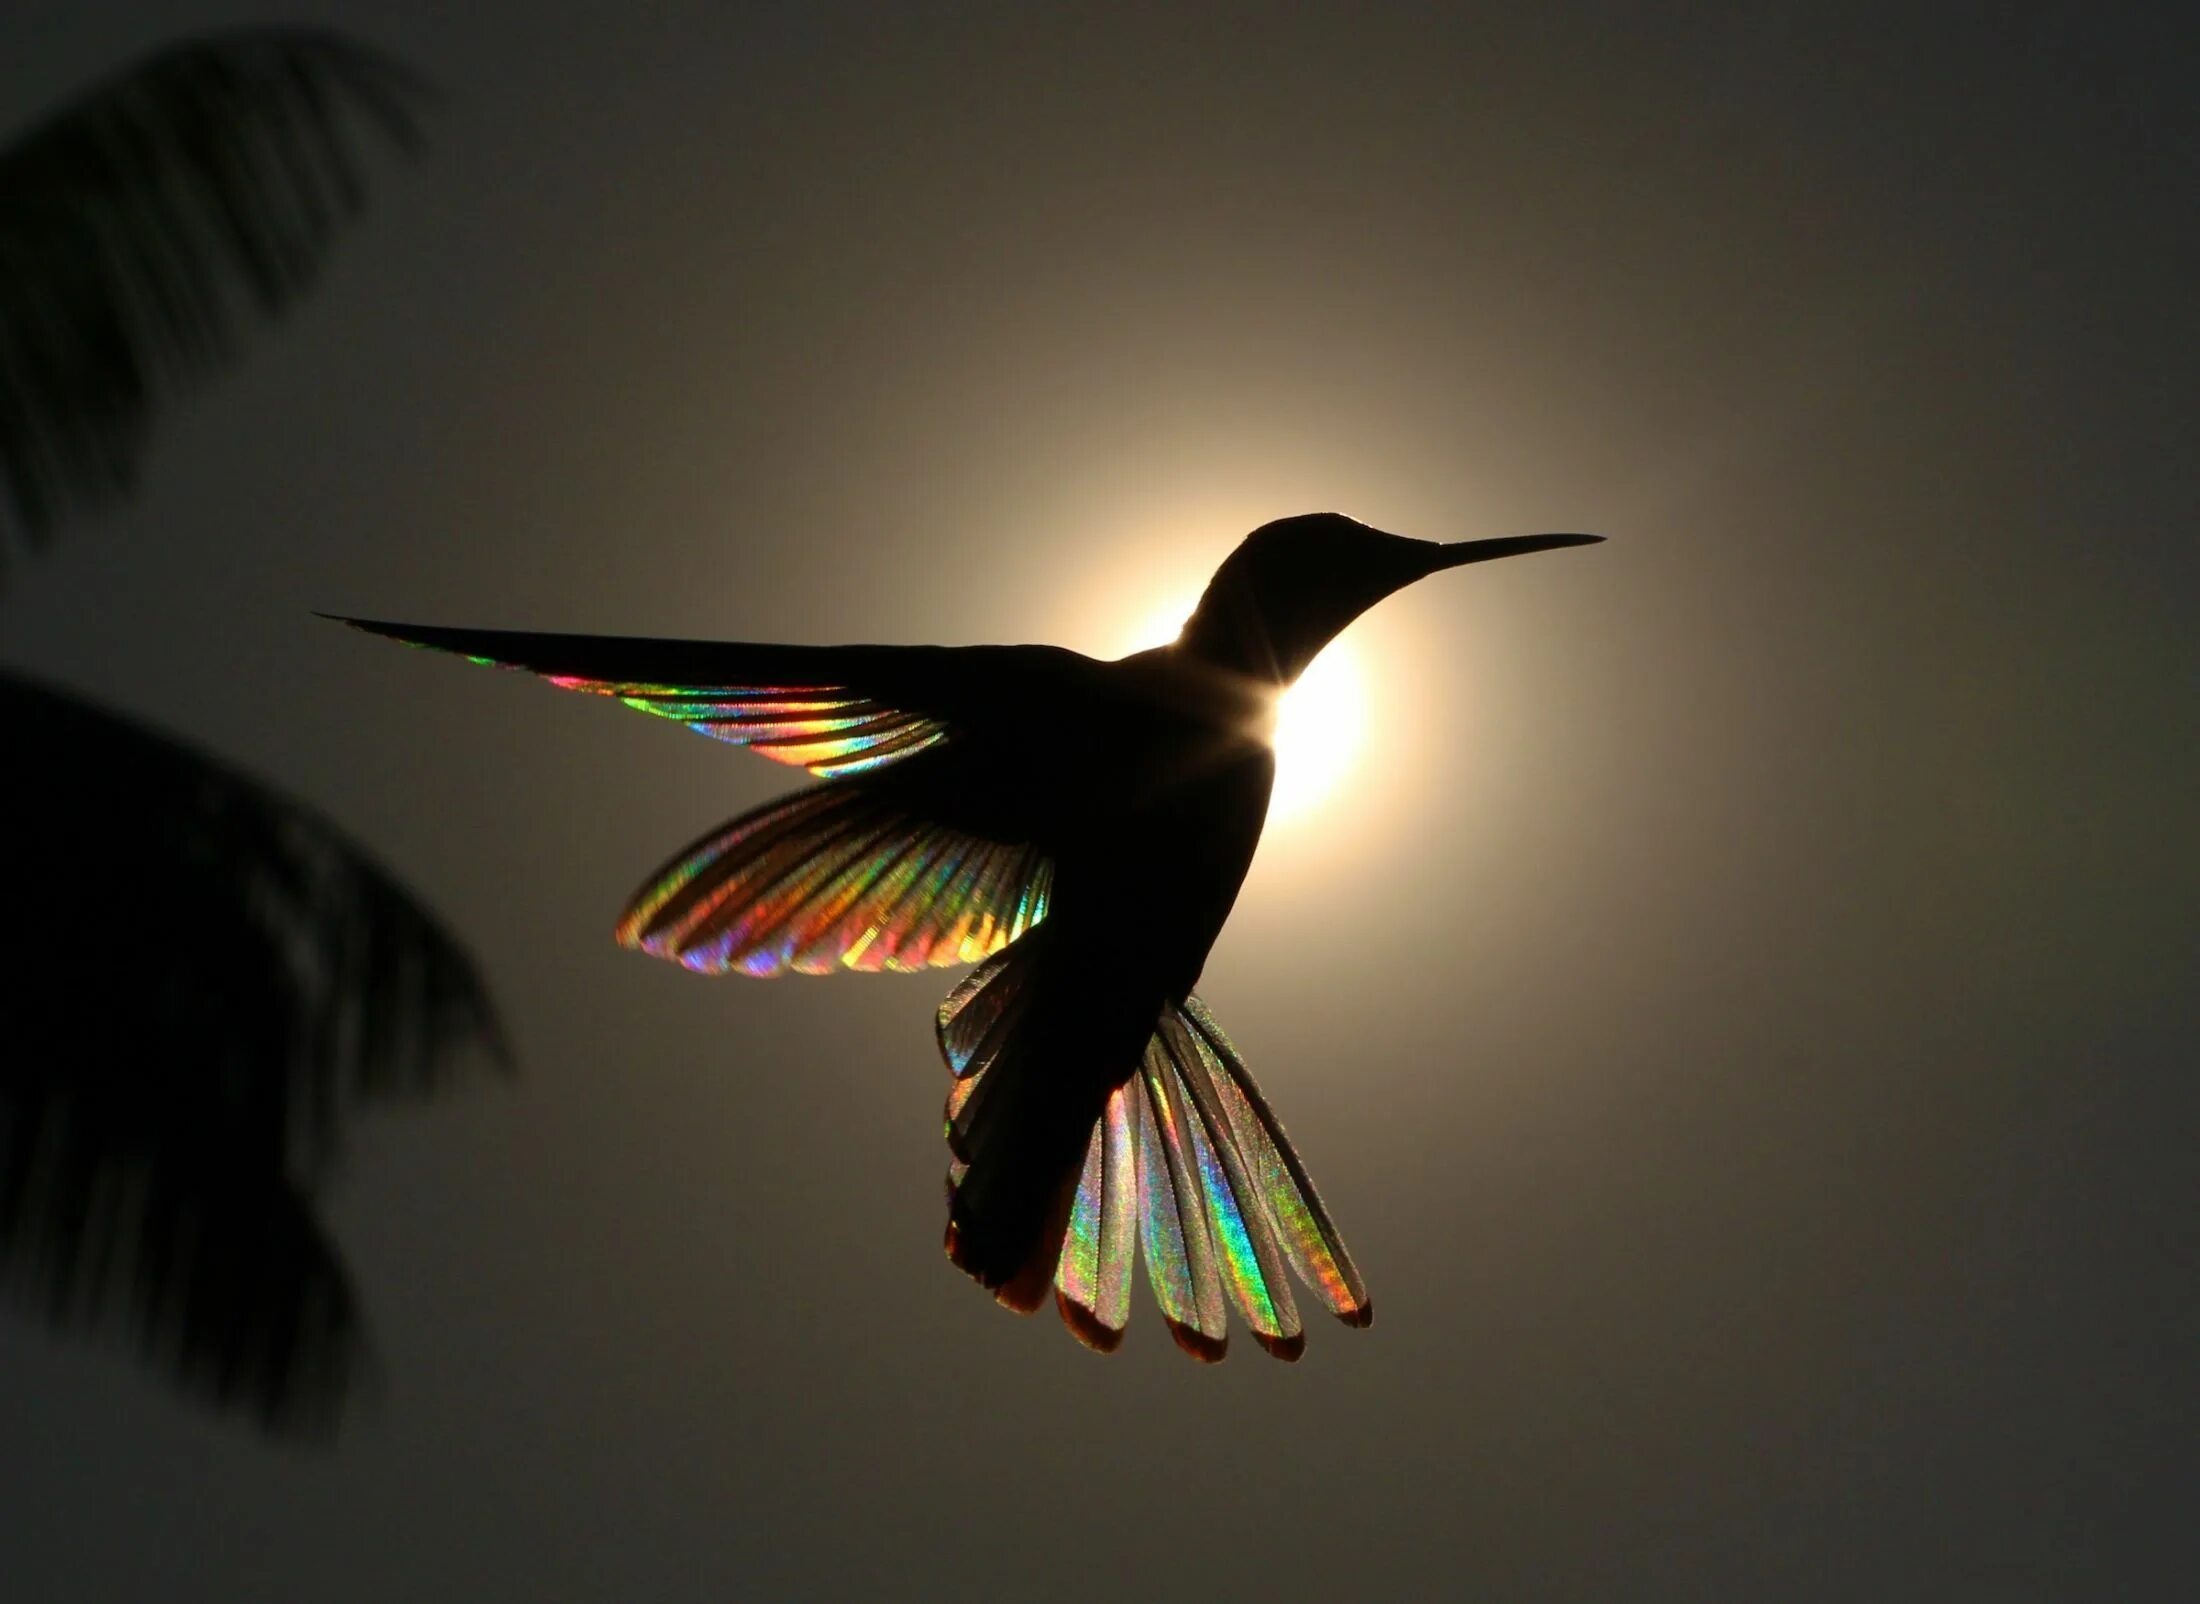 Птицы которые быстро машут крыльями. Фотограф Кристиан Спенсер. Красивые птицы. Птица в полете. Пи цы в полете.